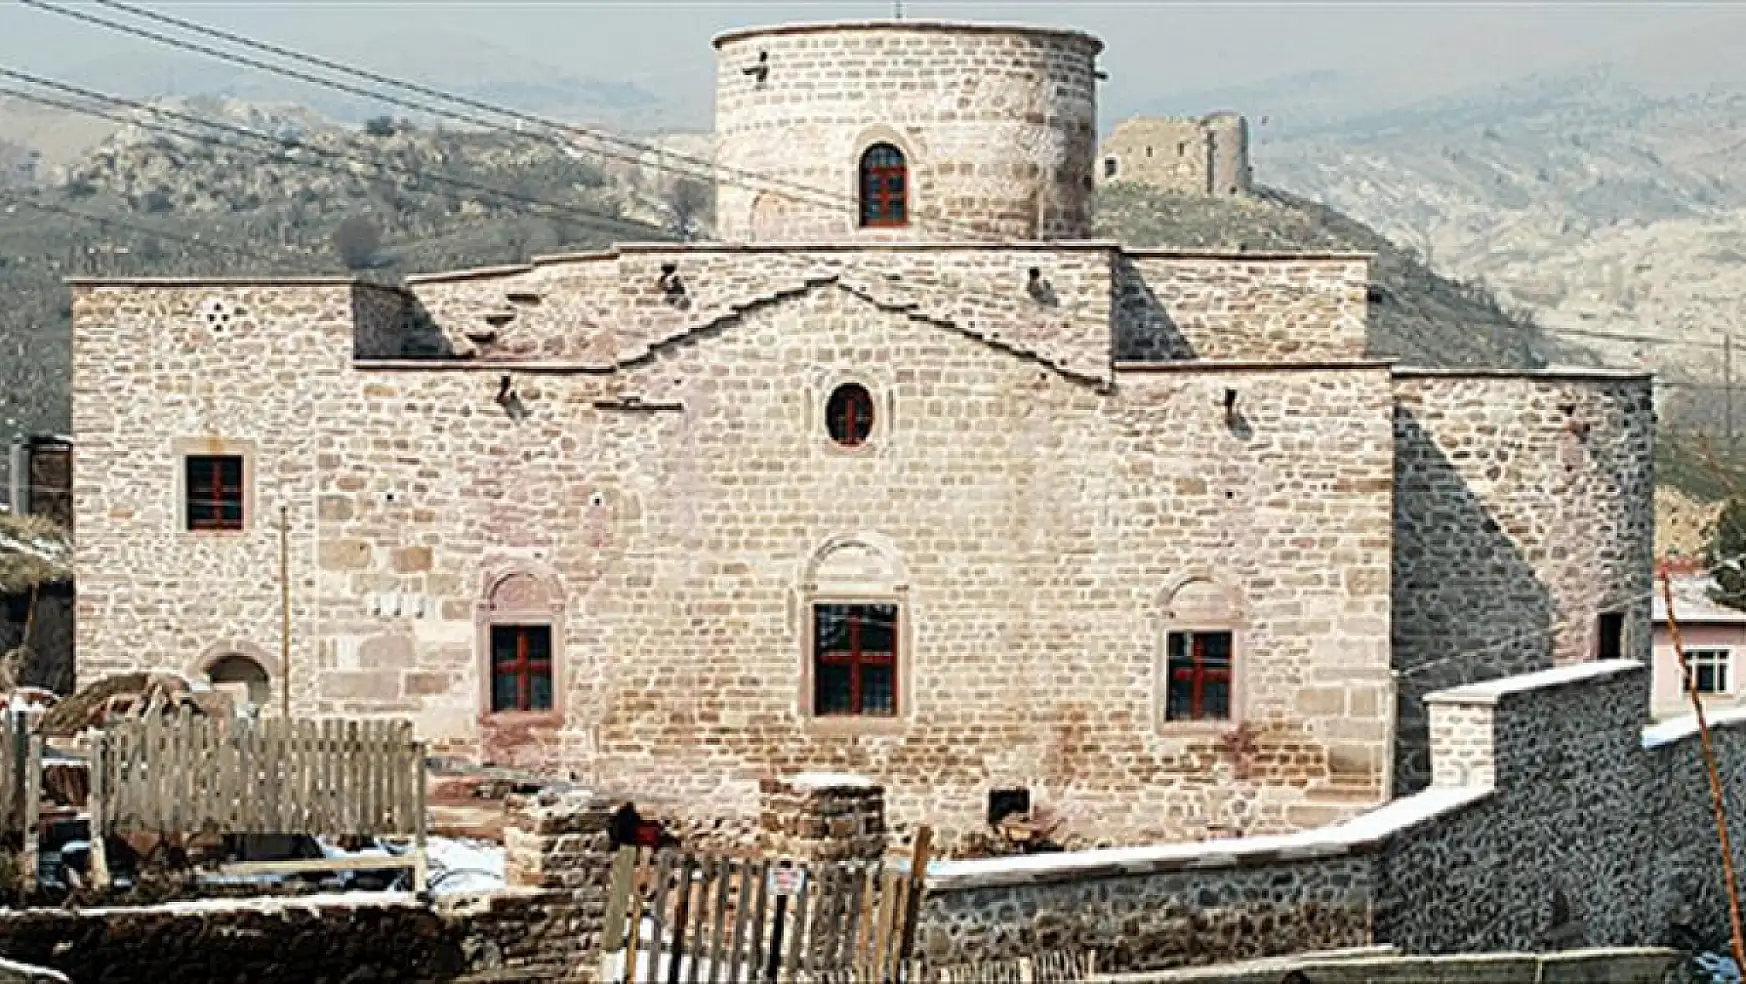 Aya Elenia Kilisesi tarihi dokusu ve mimari harikasıyla ziyaretçilerini büyülüyor